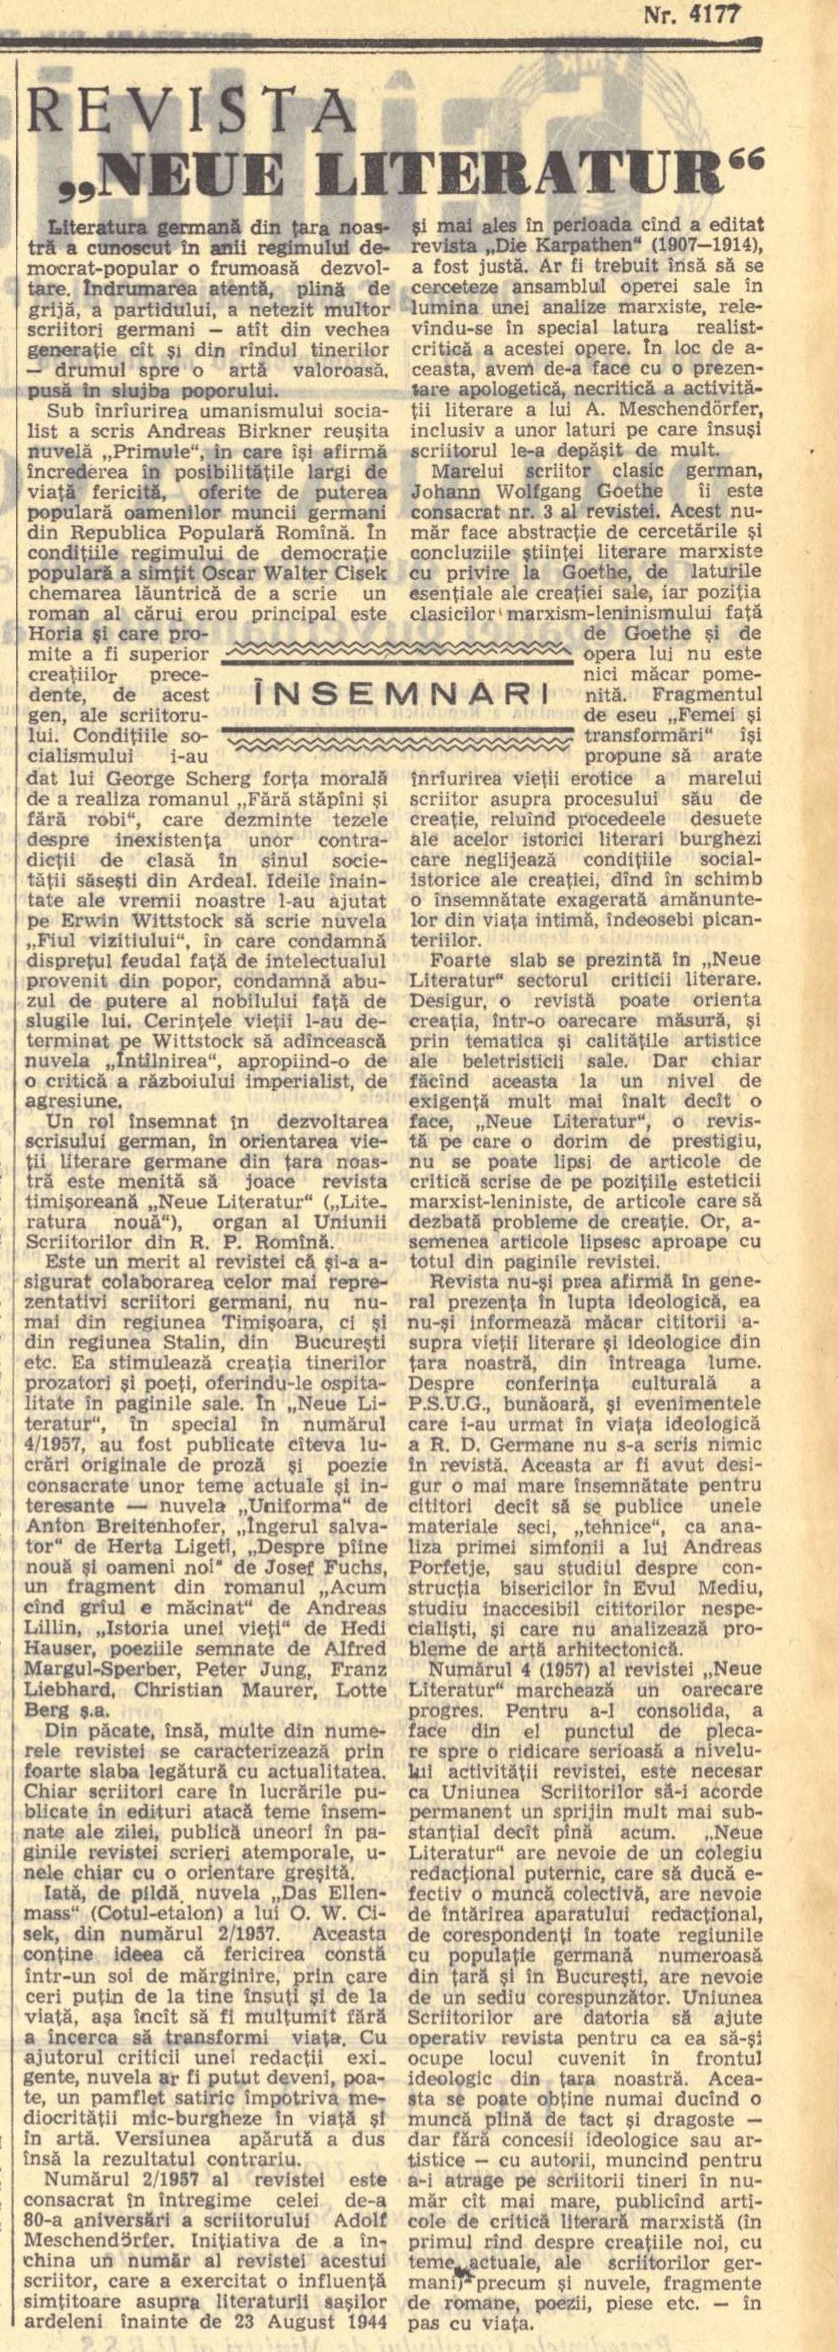 Scînteia, 30 martie 1958, p. 2